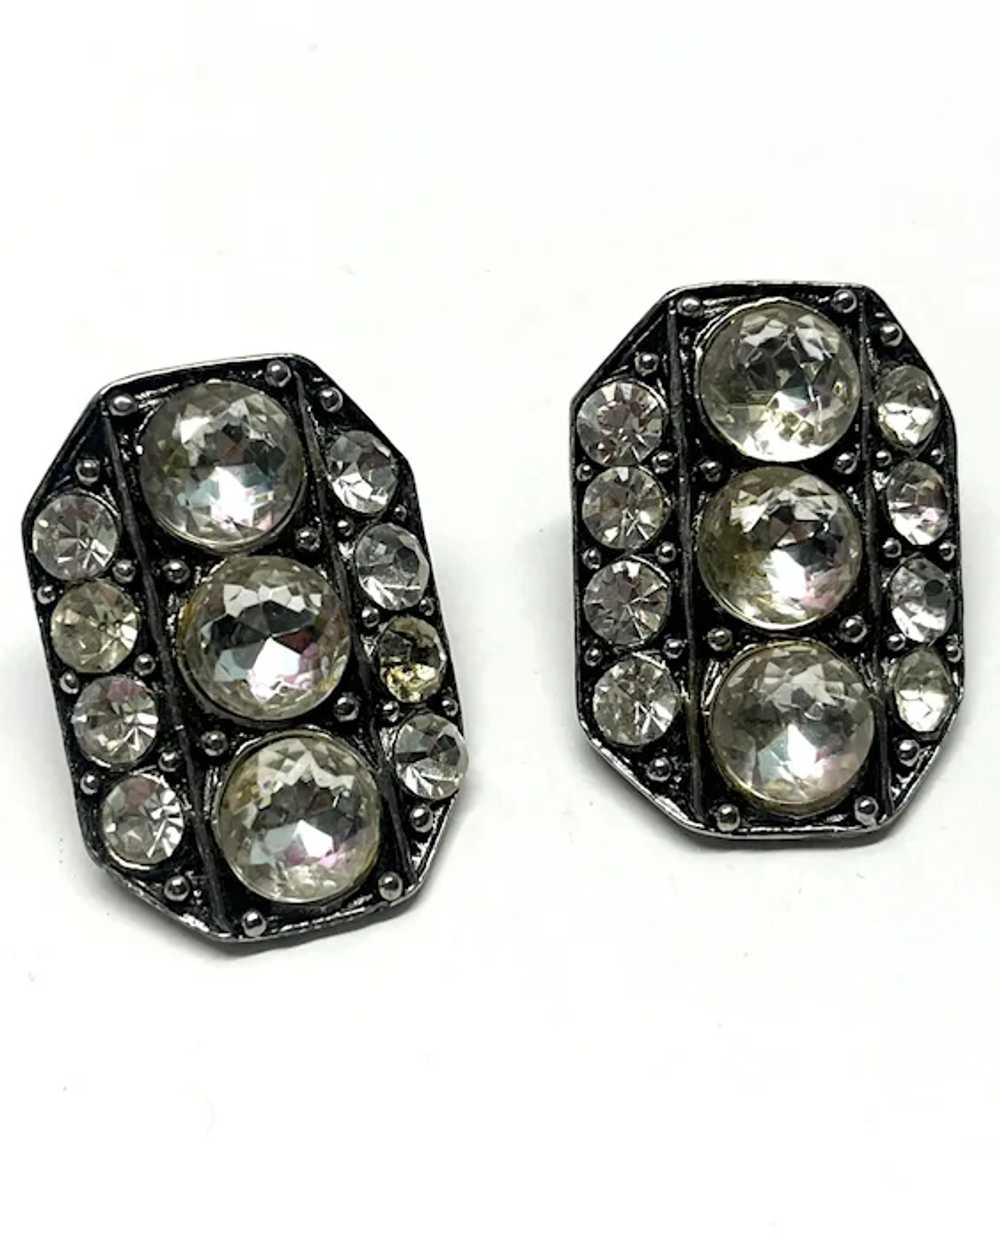 Vintage Rhinestone Silver Earrings - image 2